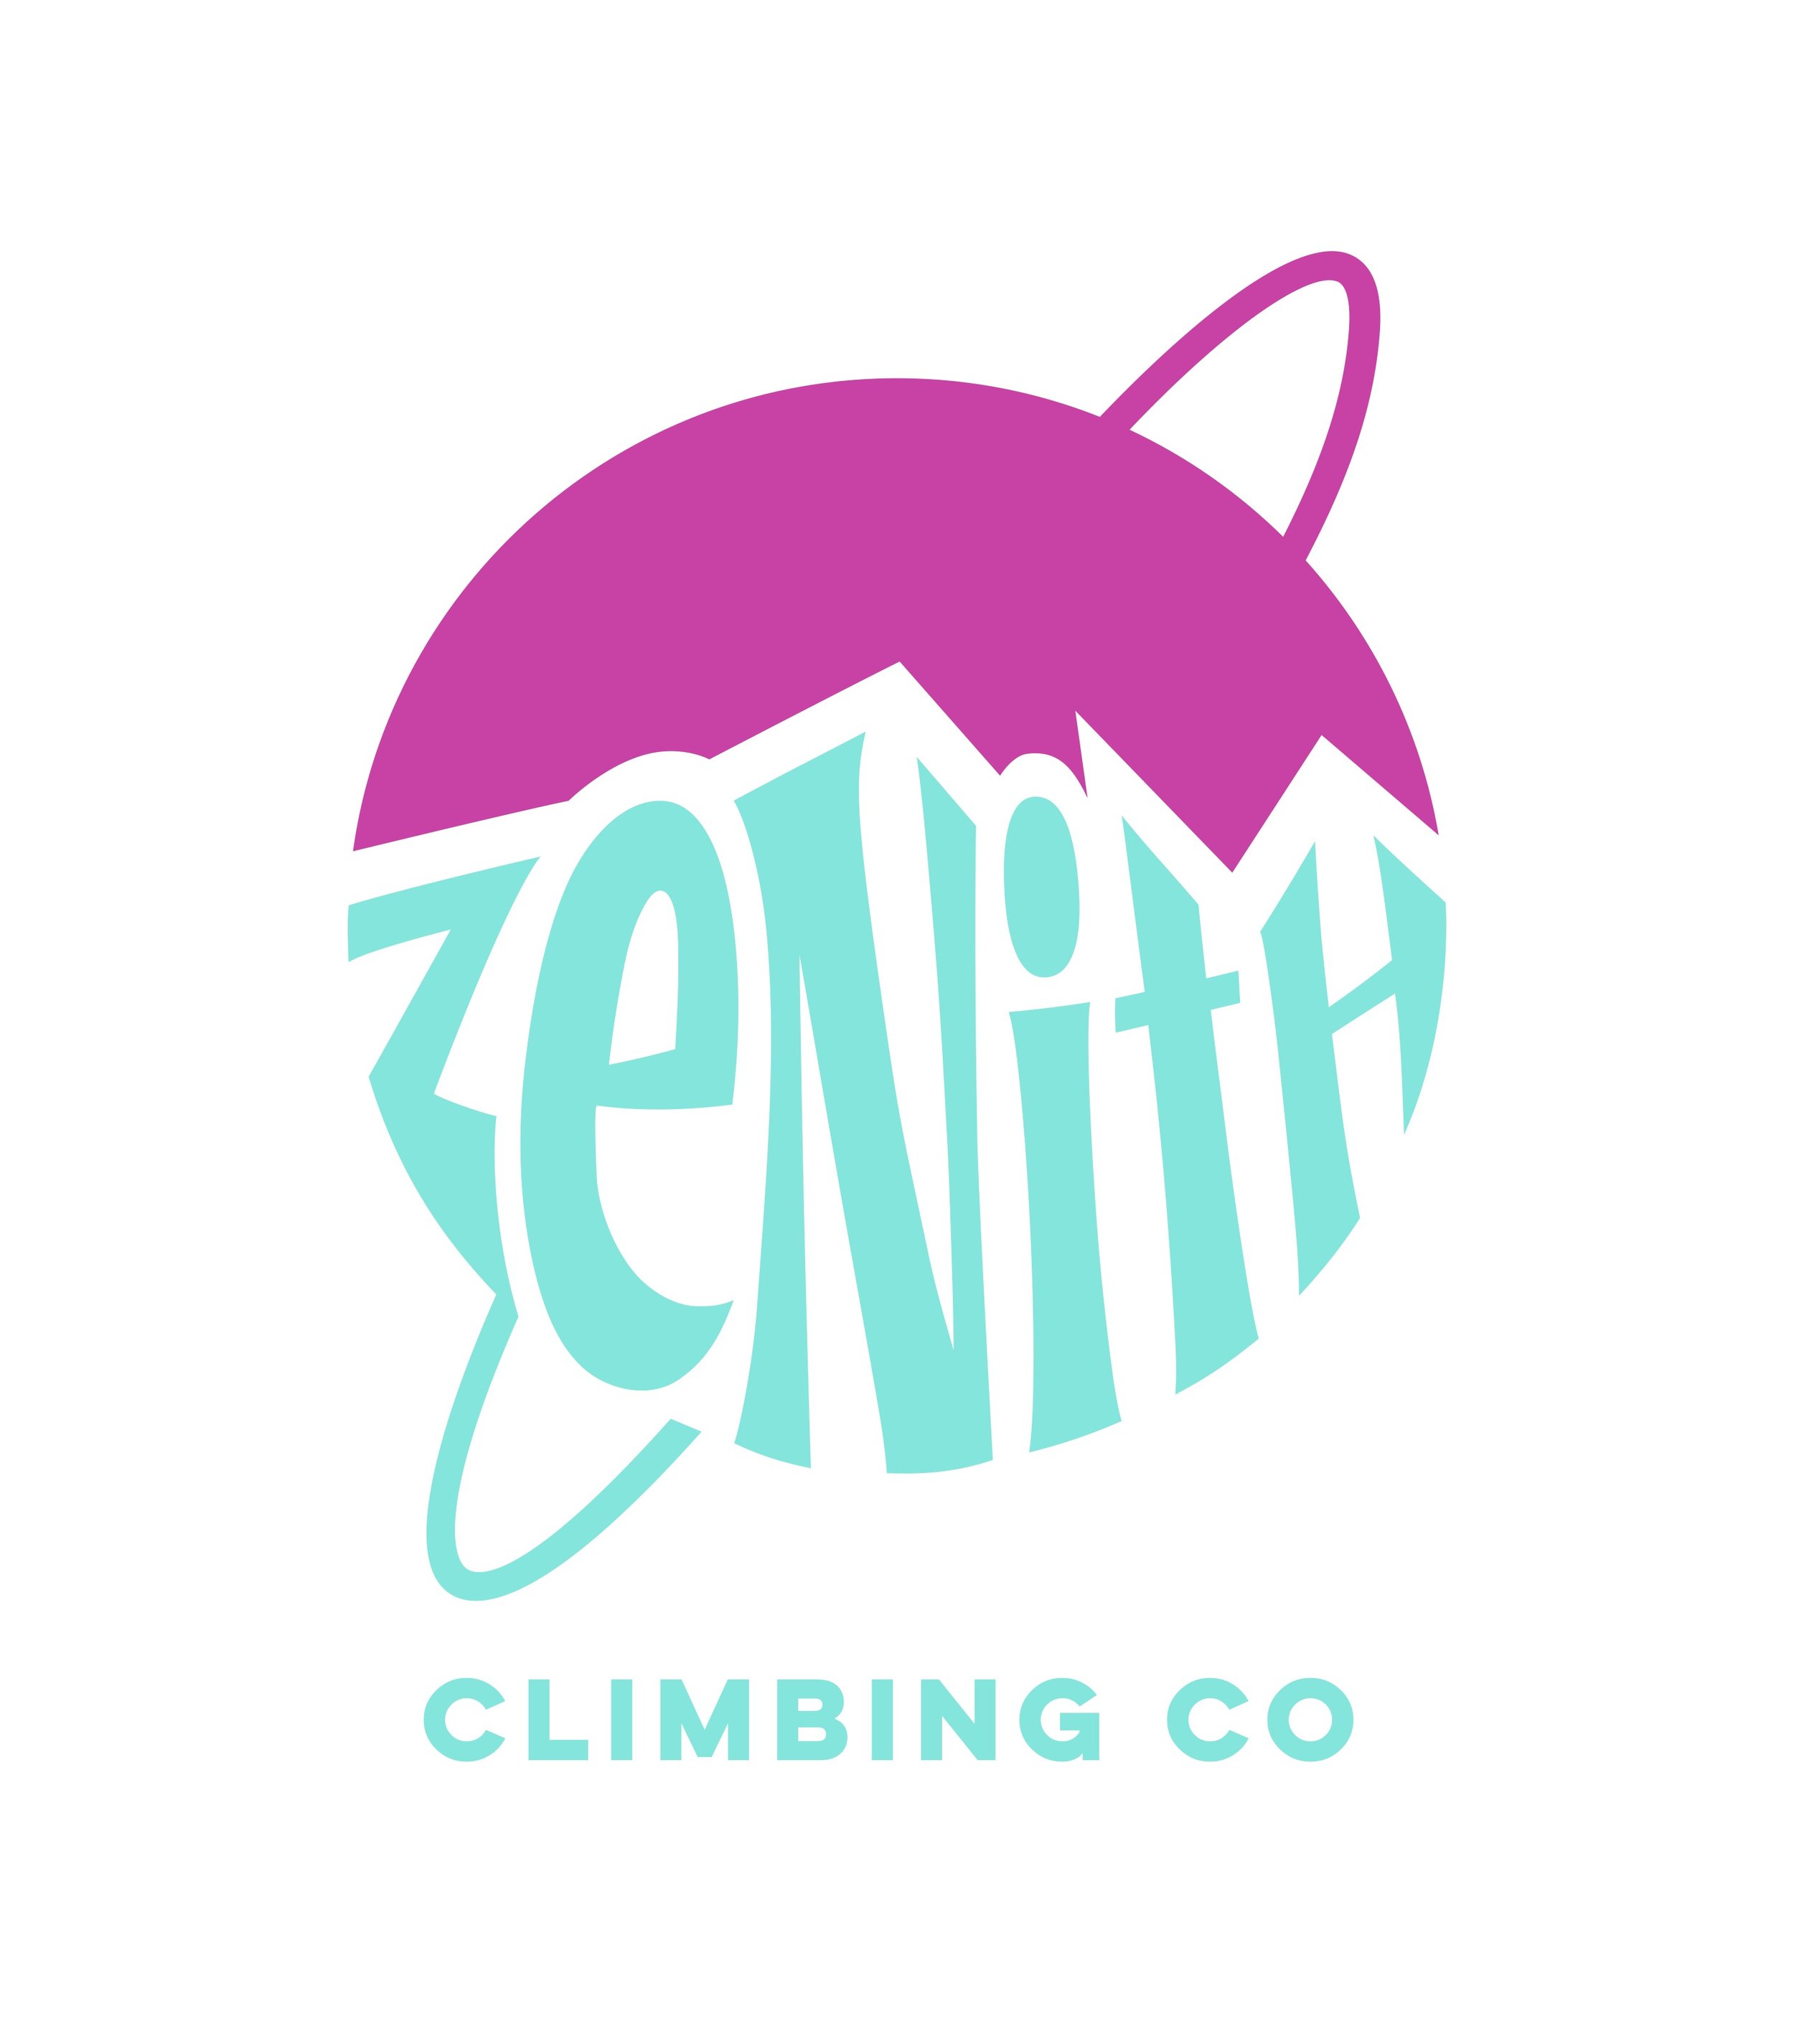 Zenith_Logo_03.19.21.jpg